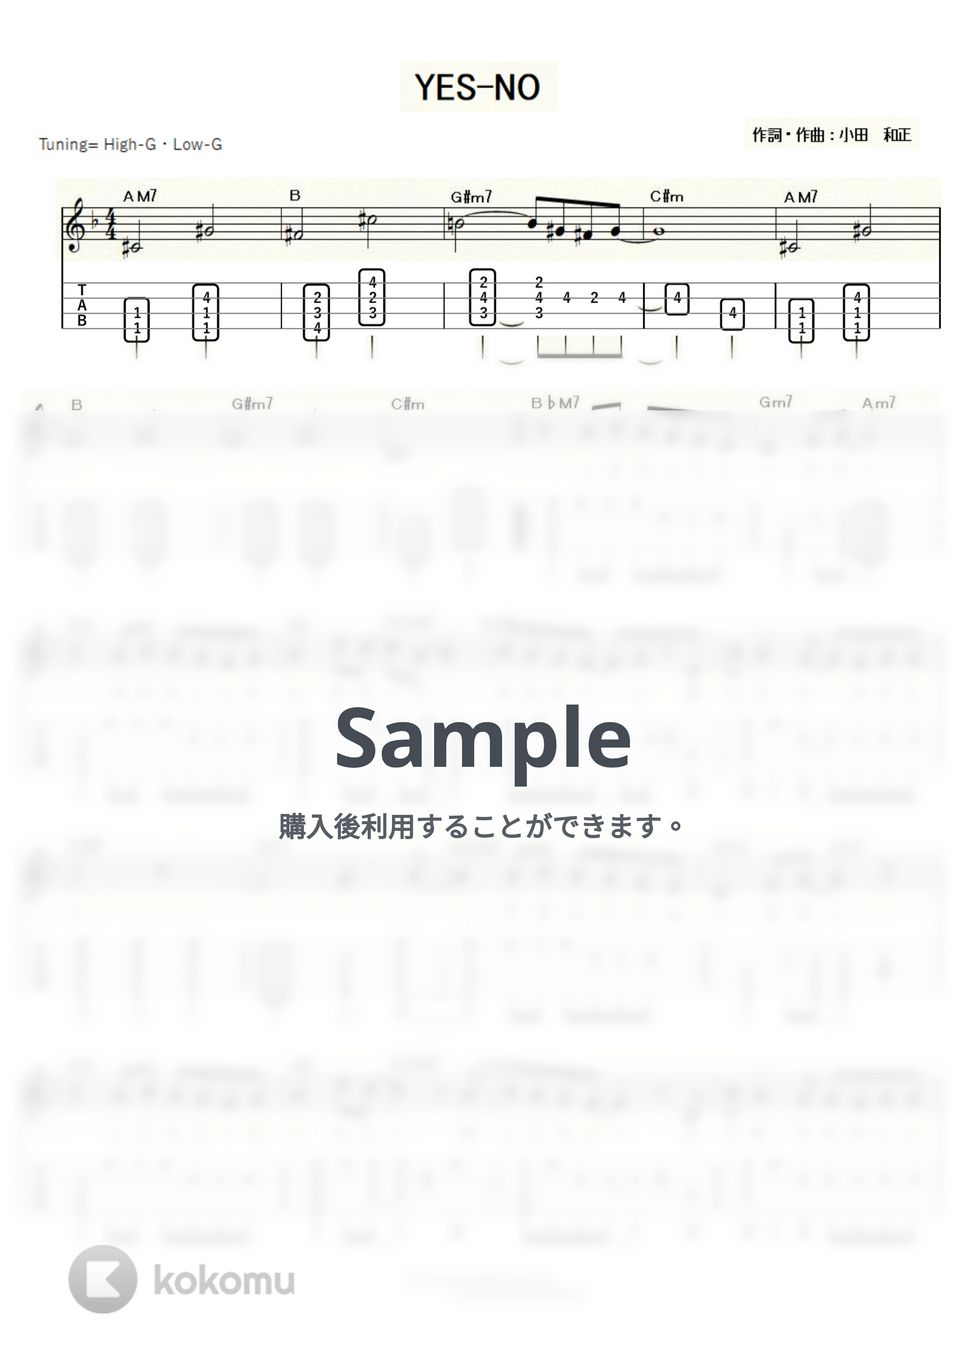 オフコース - Yes-No (ｳｸﾚﾚｿﾛ/High-G・Low-G/中級) by ukulelepapa